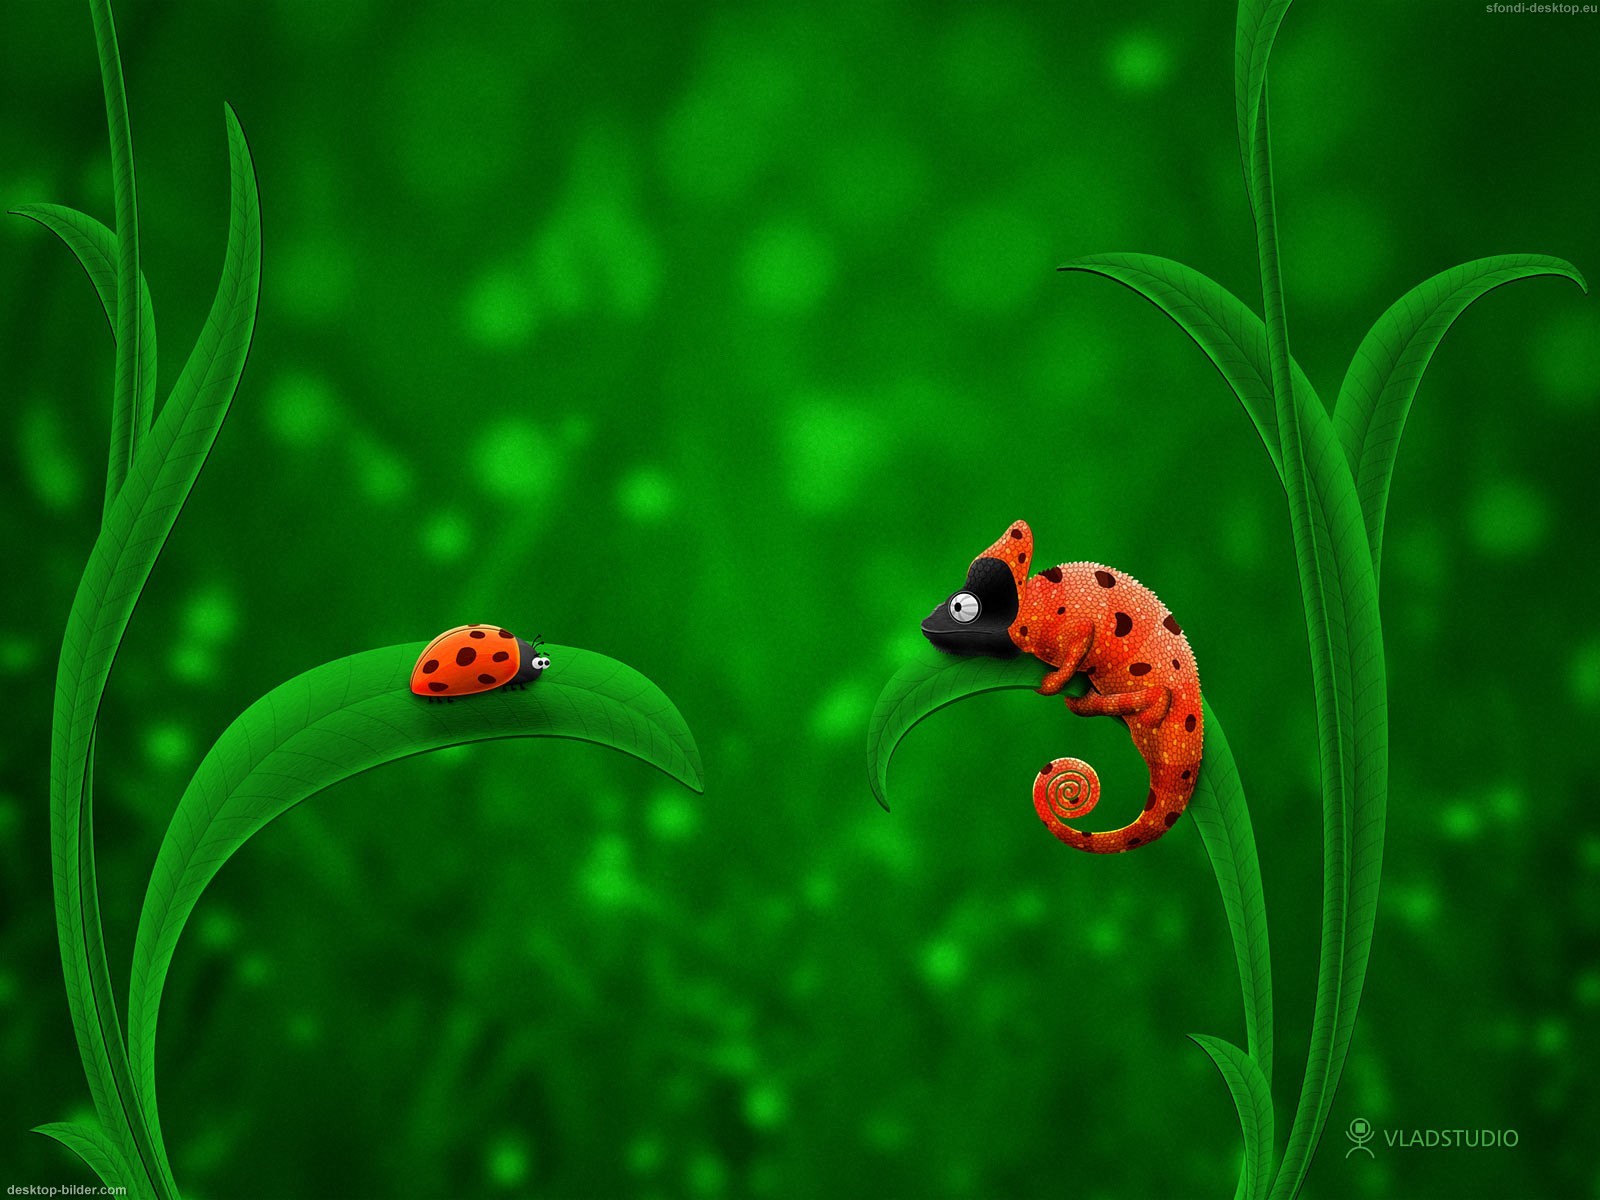 Schaue Dir Den Hintergrundbild Ladybug Chameleon In Der Gr E Von